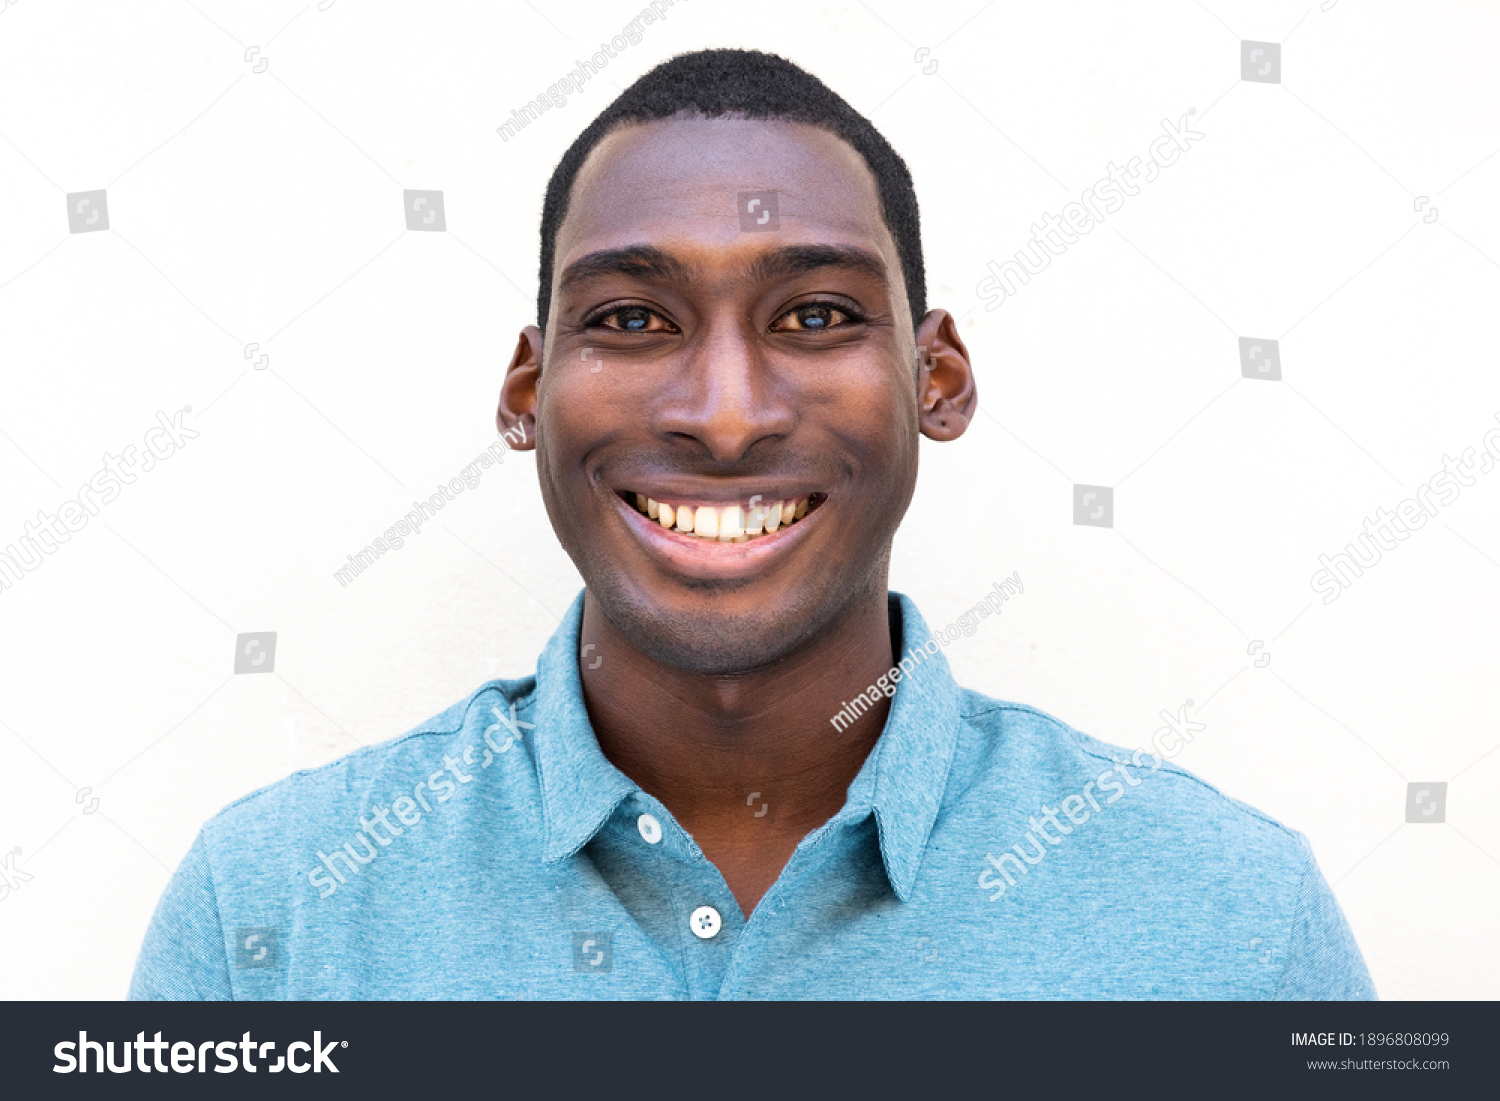 929 313件の「black Man Face」の画像、写真素材、ベクター画像 Shutterstock